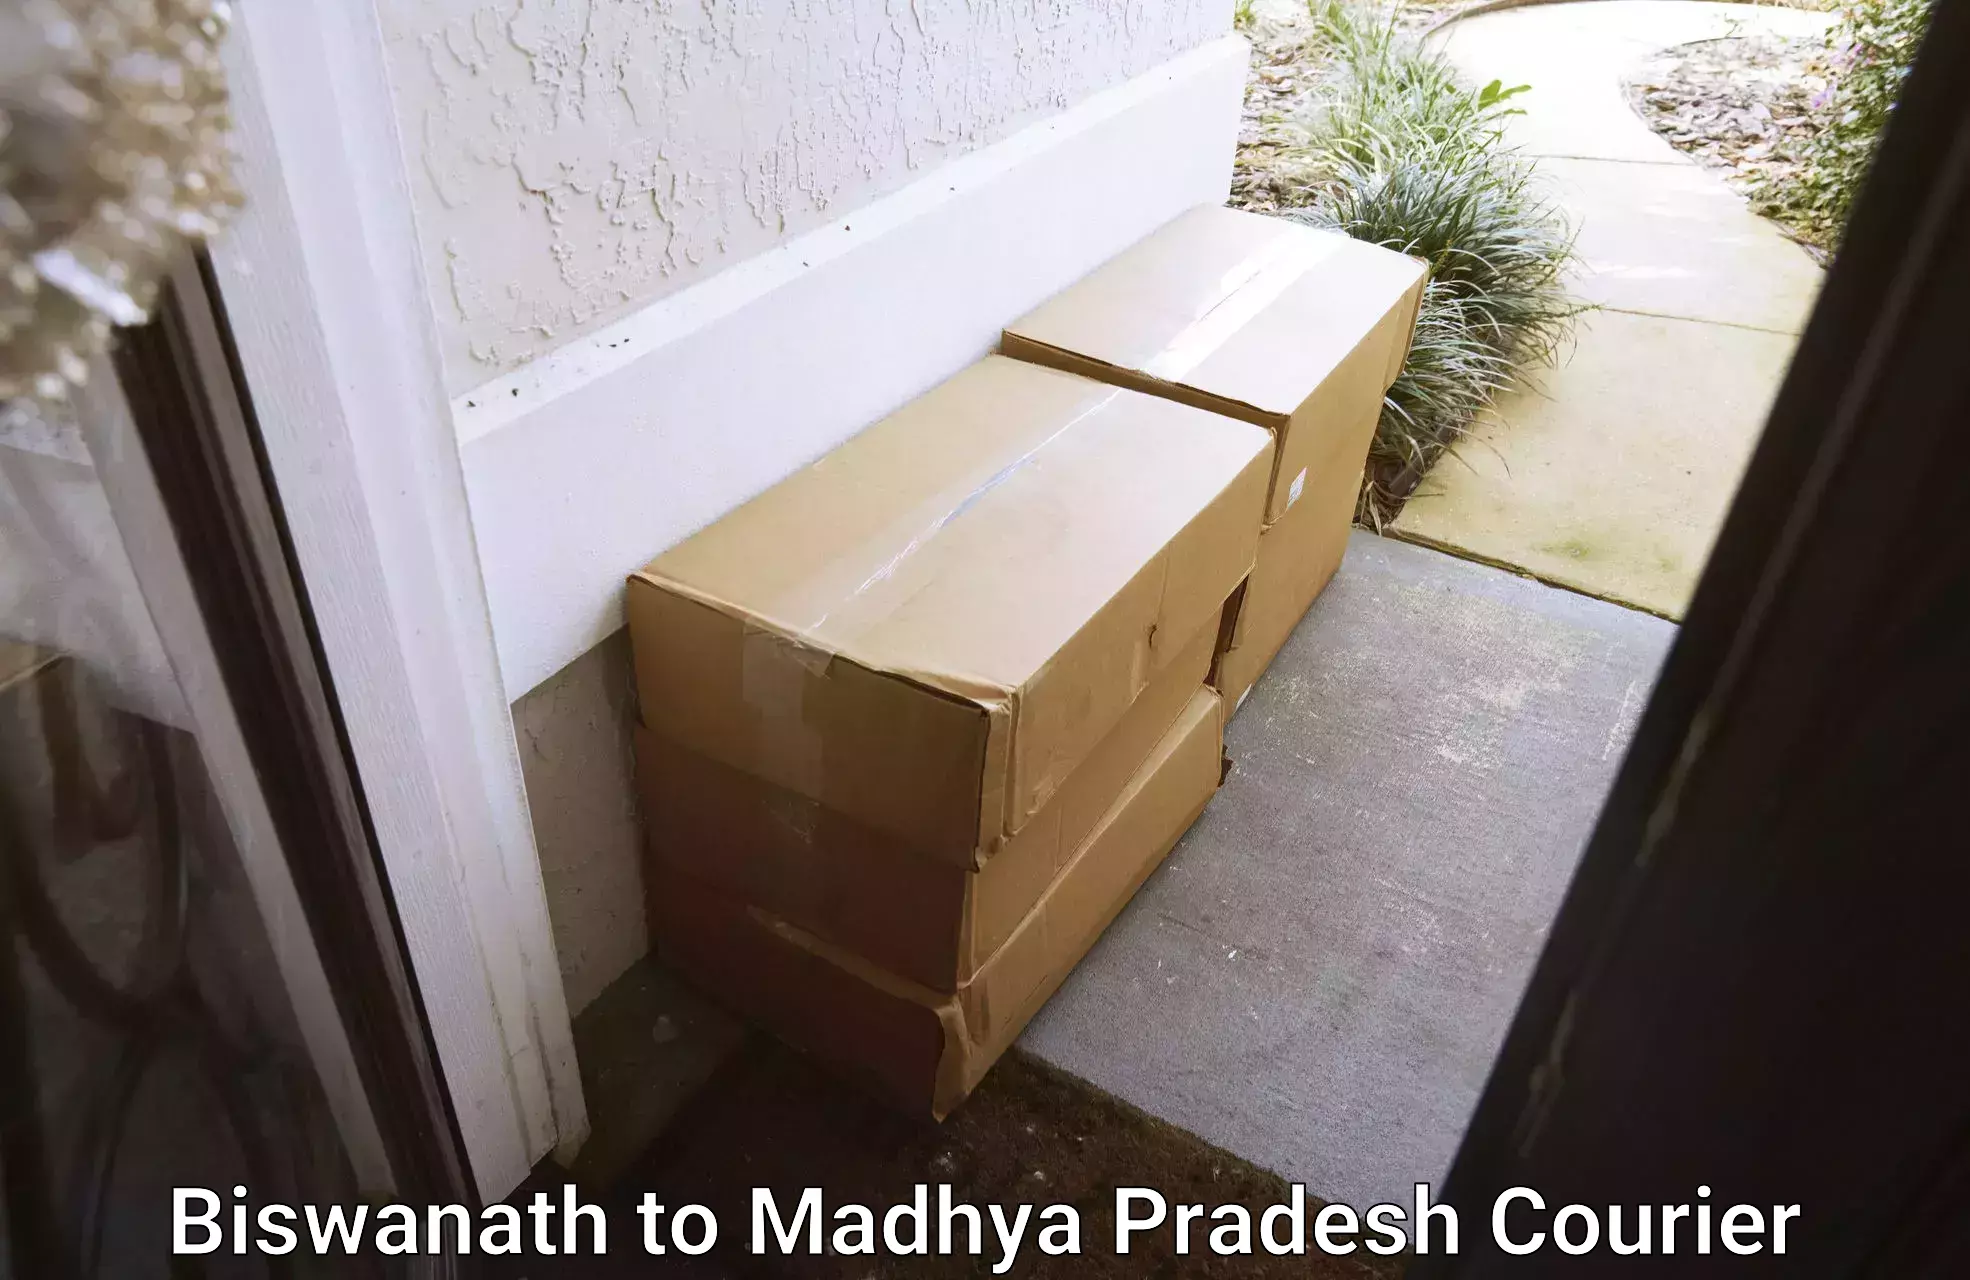 Doorstep delivery service Biswanath to Katni